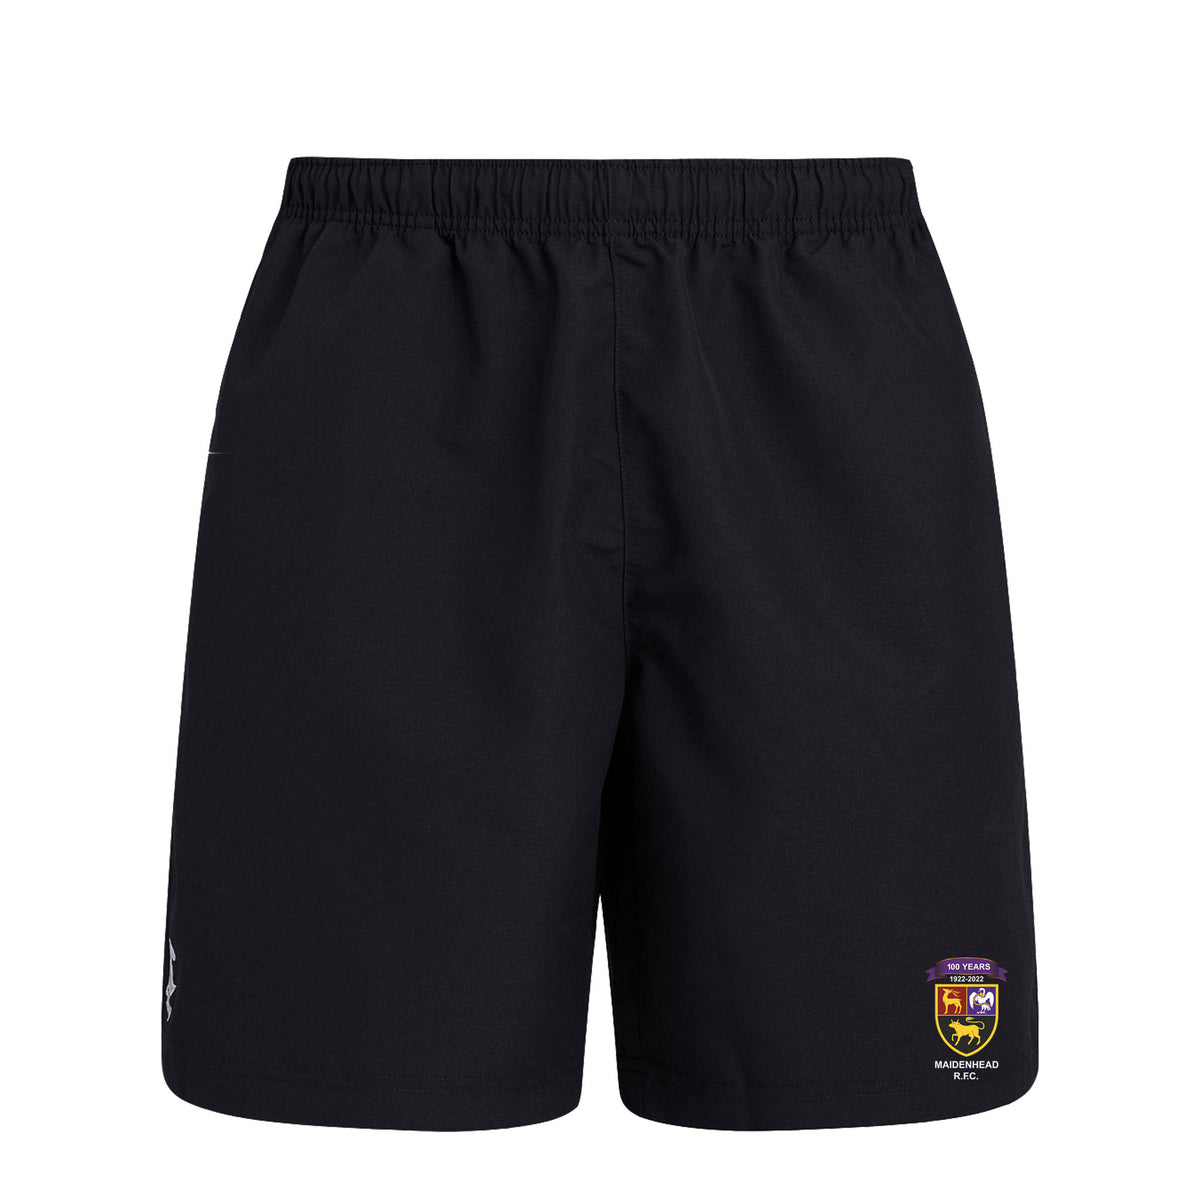 Maidenhead RFC Canterbury Mens Club Shorts: Black